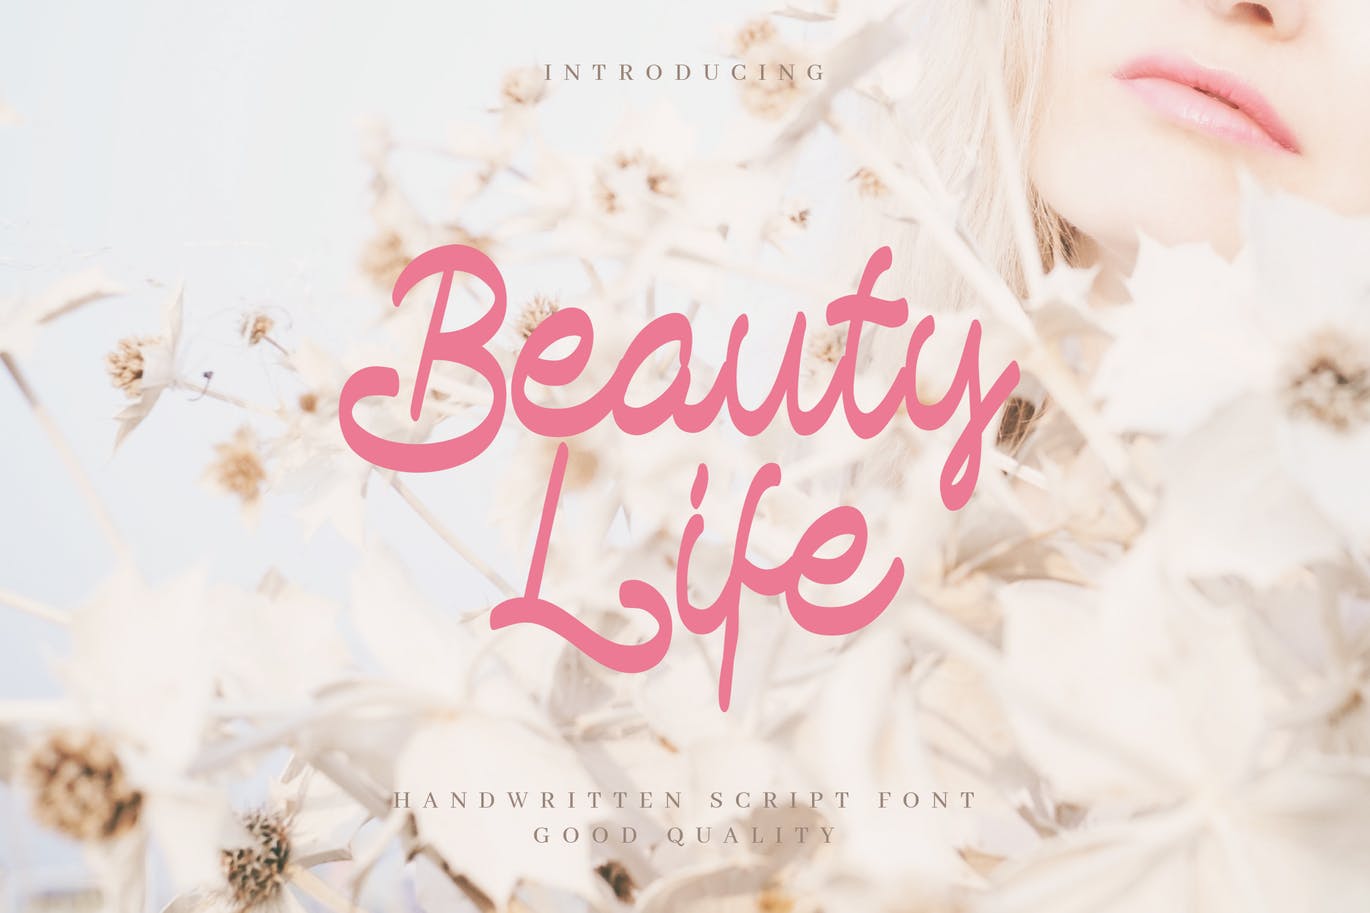 简单浪漫书写风格英文手写字体 Beauty Life – Romantic Handwritten Script插图